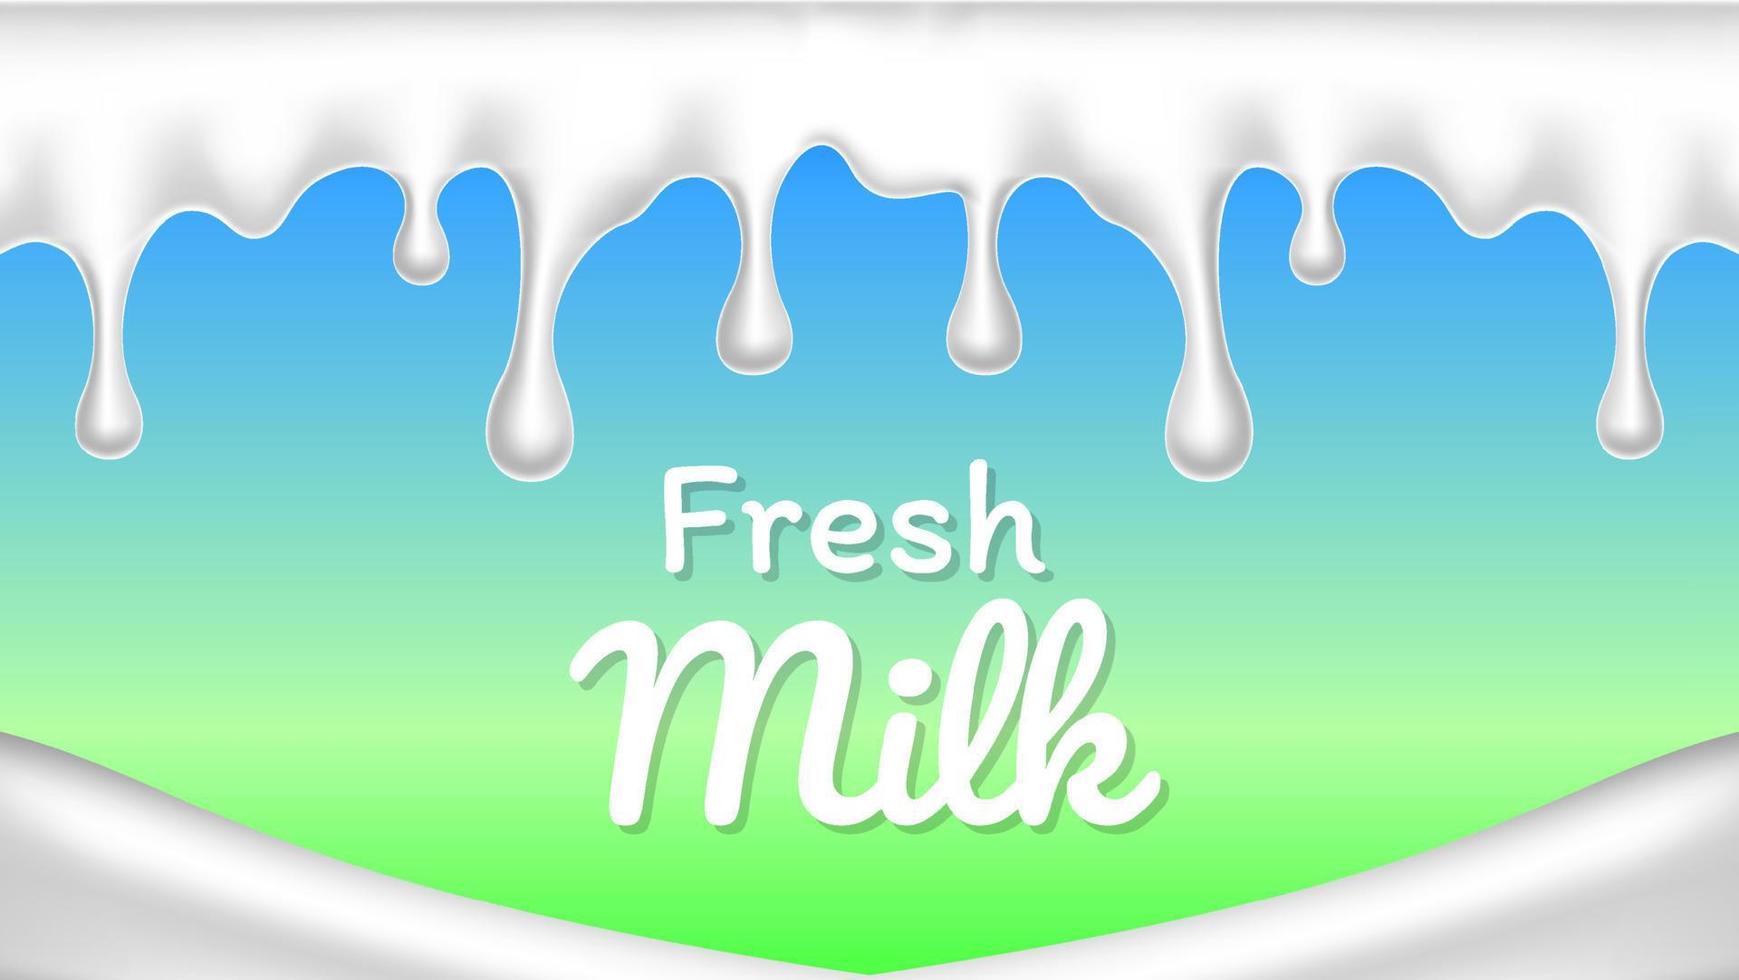 vettore realistico dell'illustrazione della spruzzata o della goccia del latte fresco